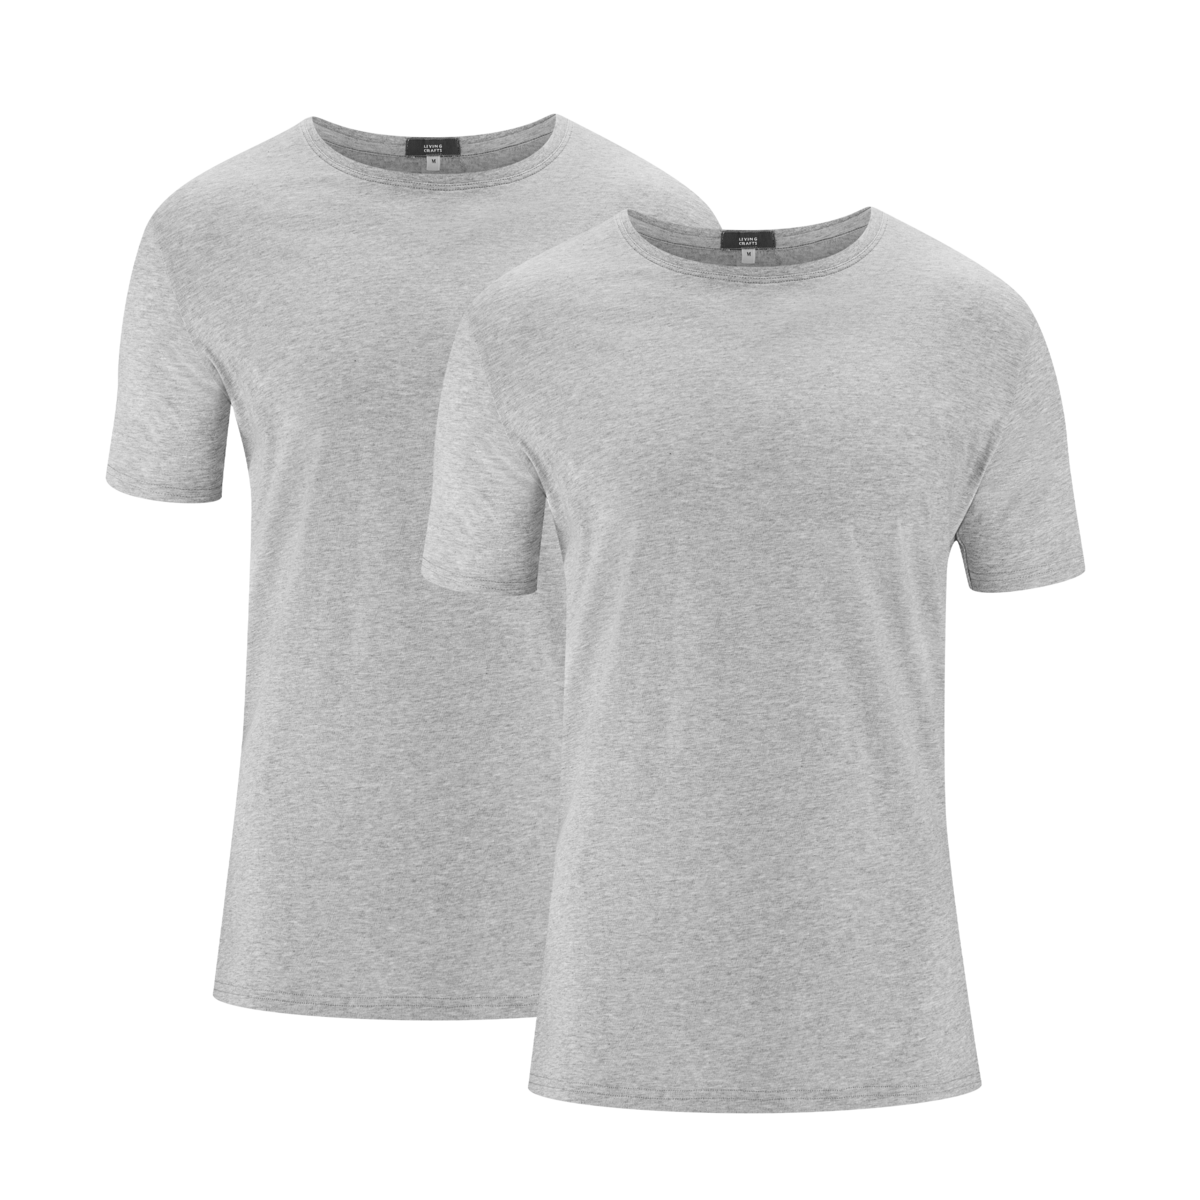 Grau T-Shirt, 2er-Pack, FABIAN